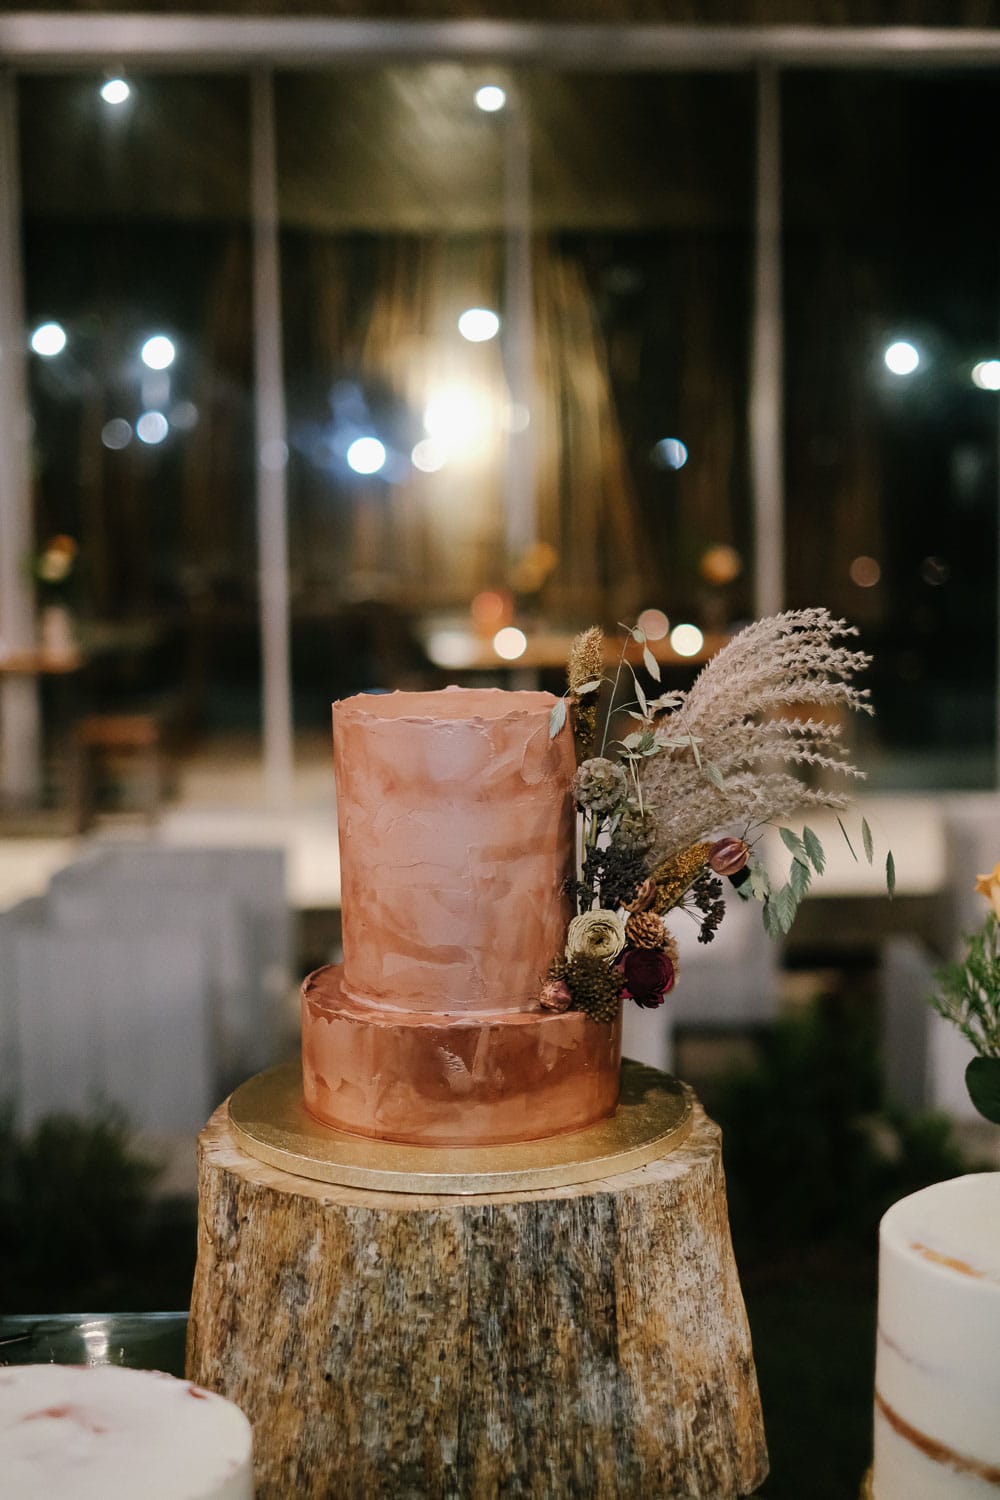 wedding cake by Migalha doçe #terracotta #weddingcake #cake #cakedesign